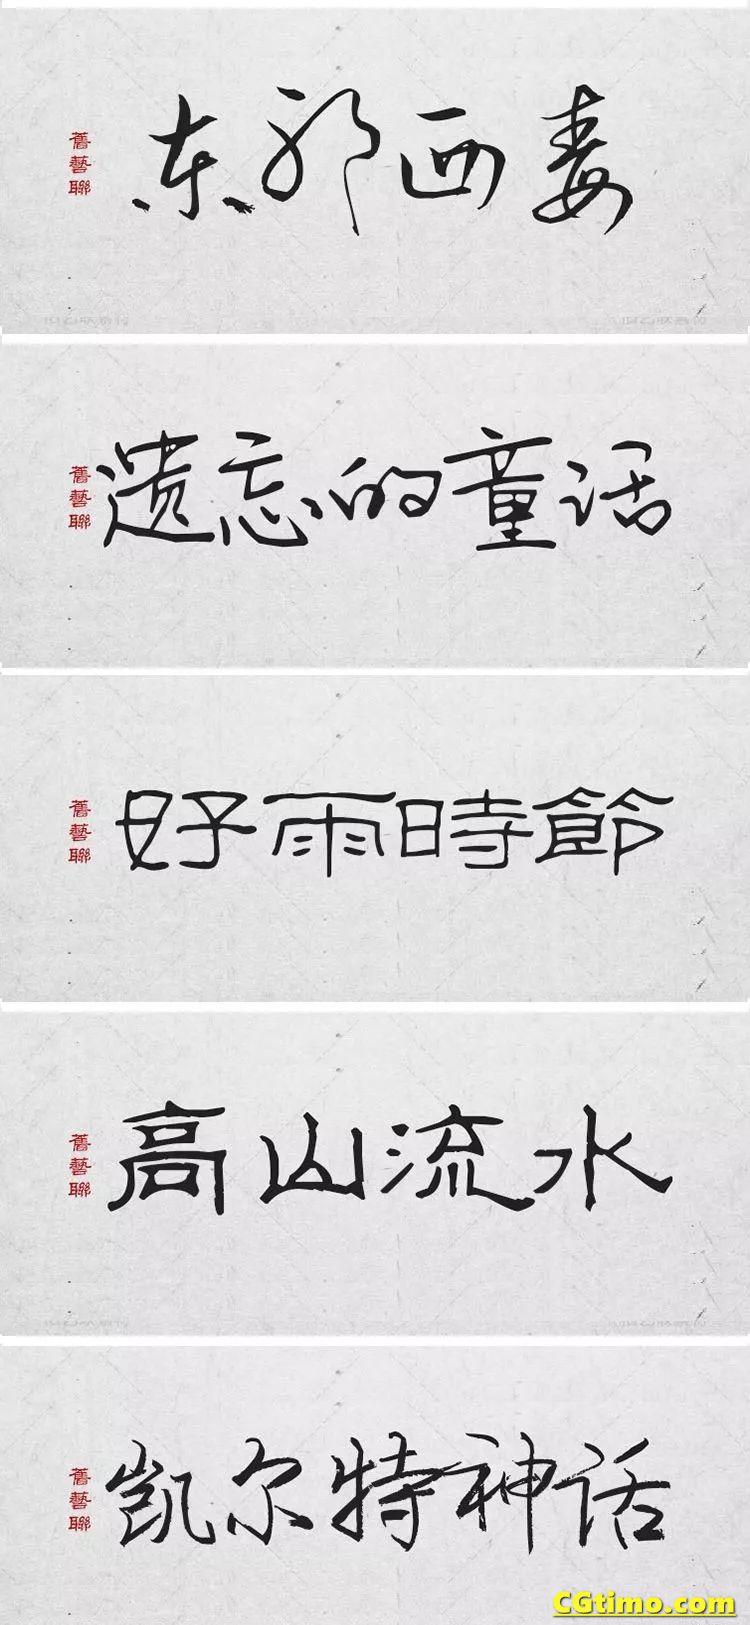 字体-300款中国风高端毛笔字体+笔触合集 字体下载 第10张